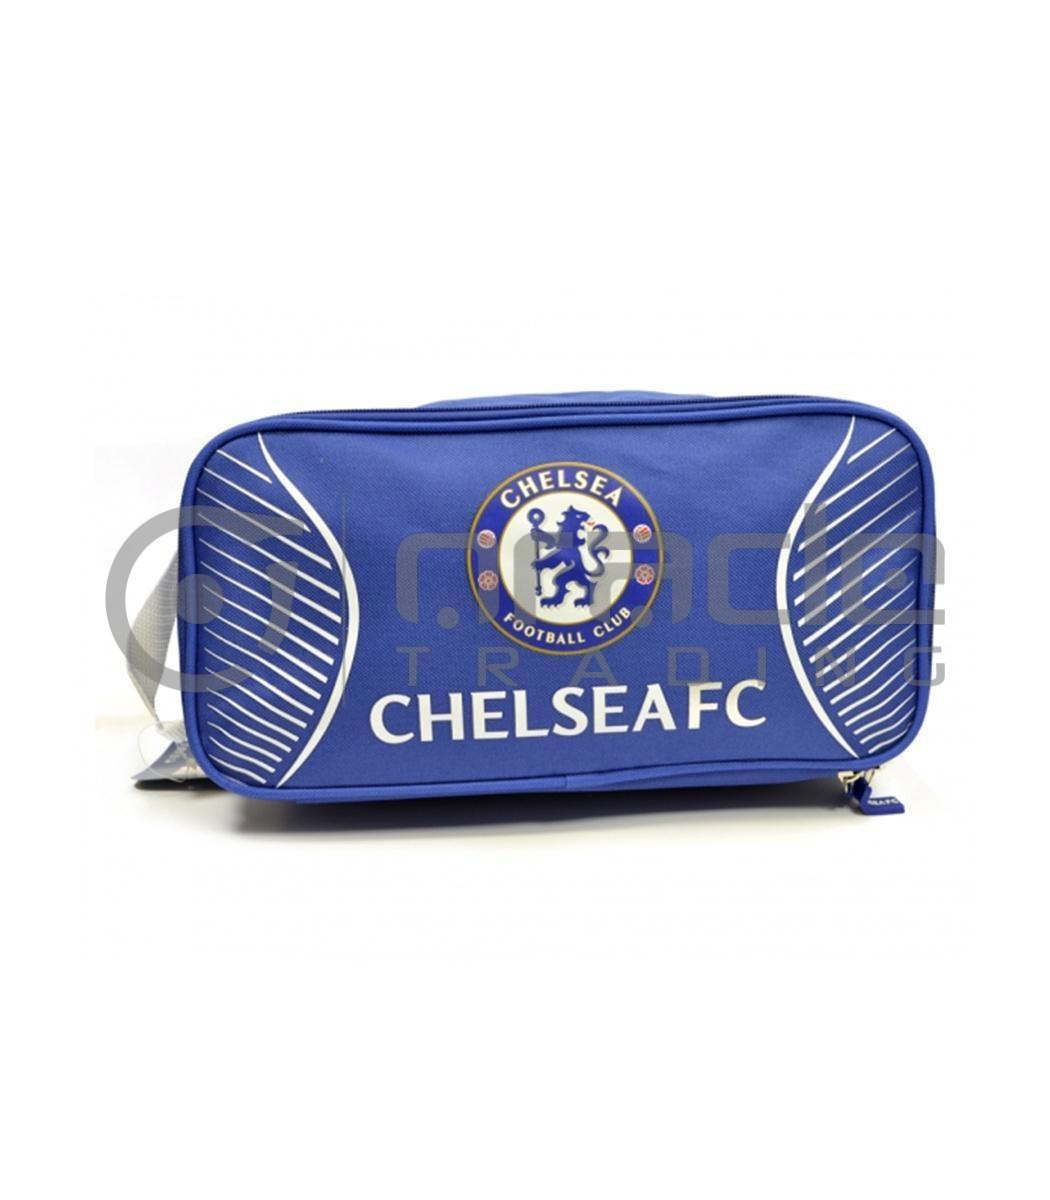 Chelsea Shoe Bag